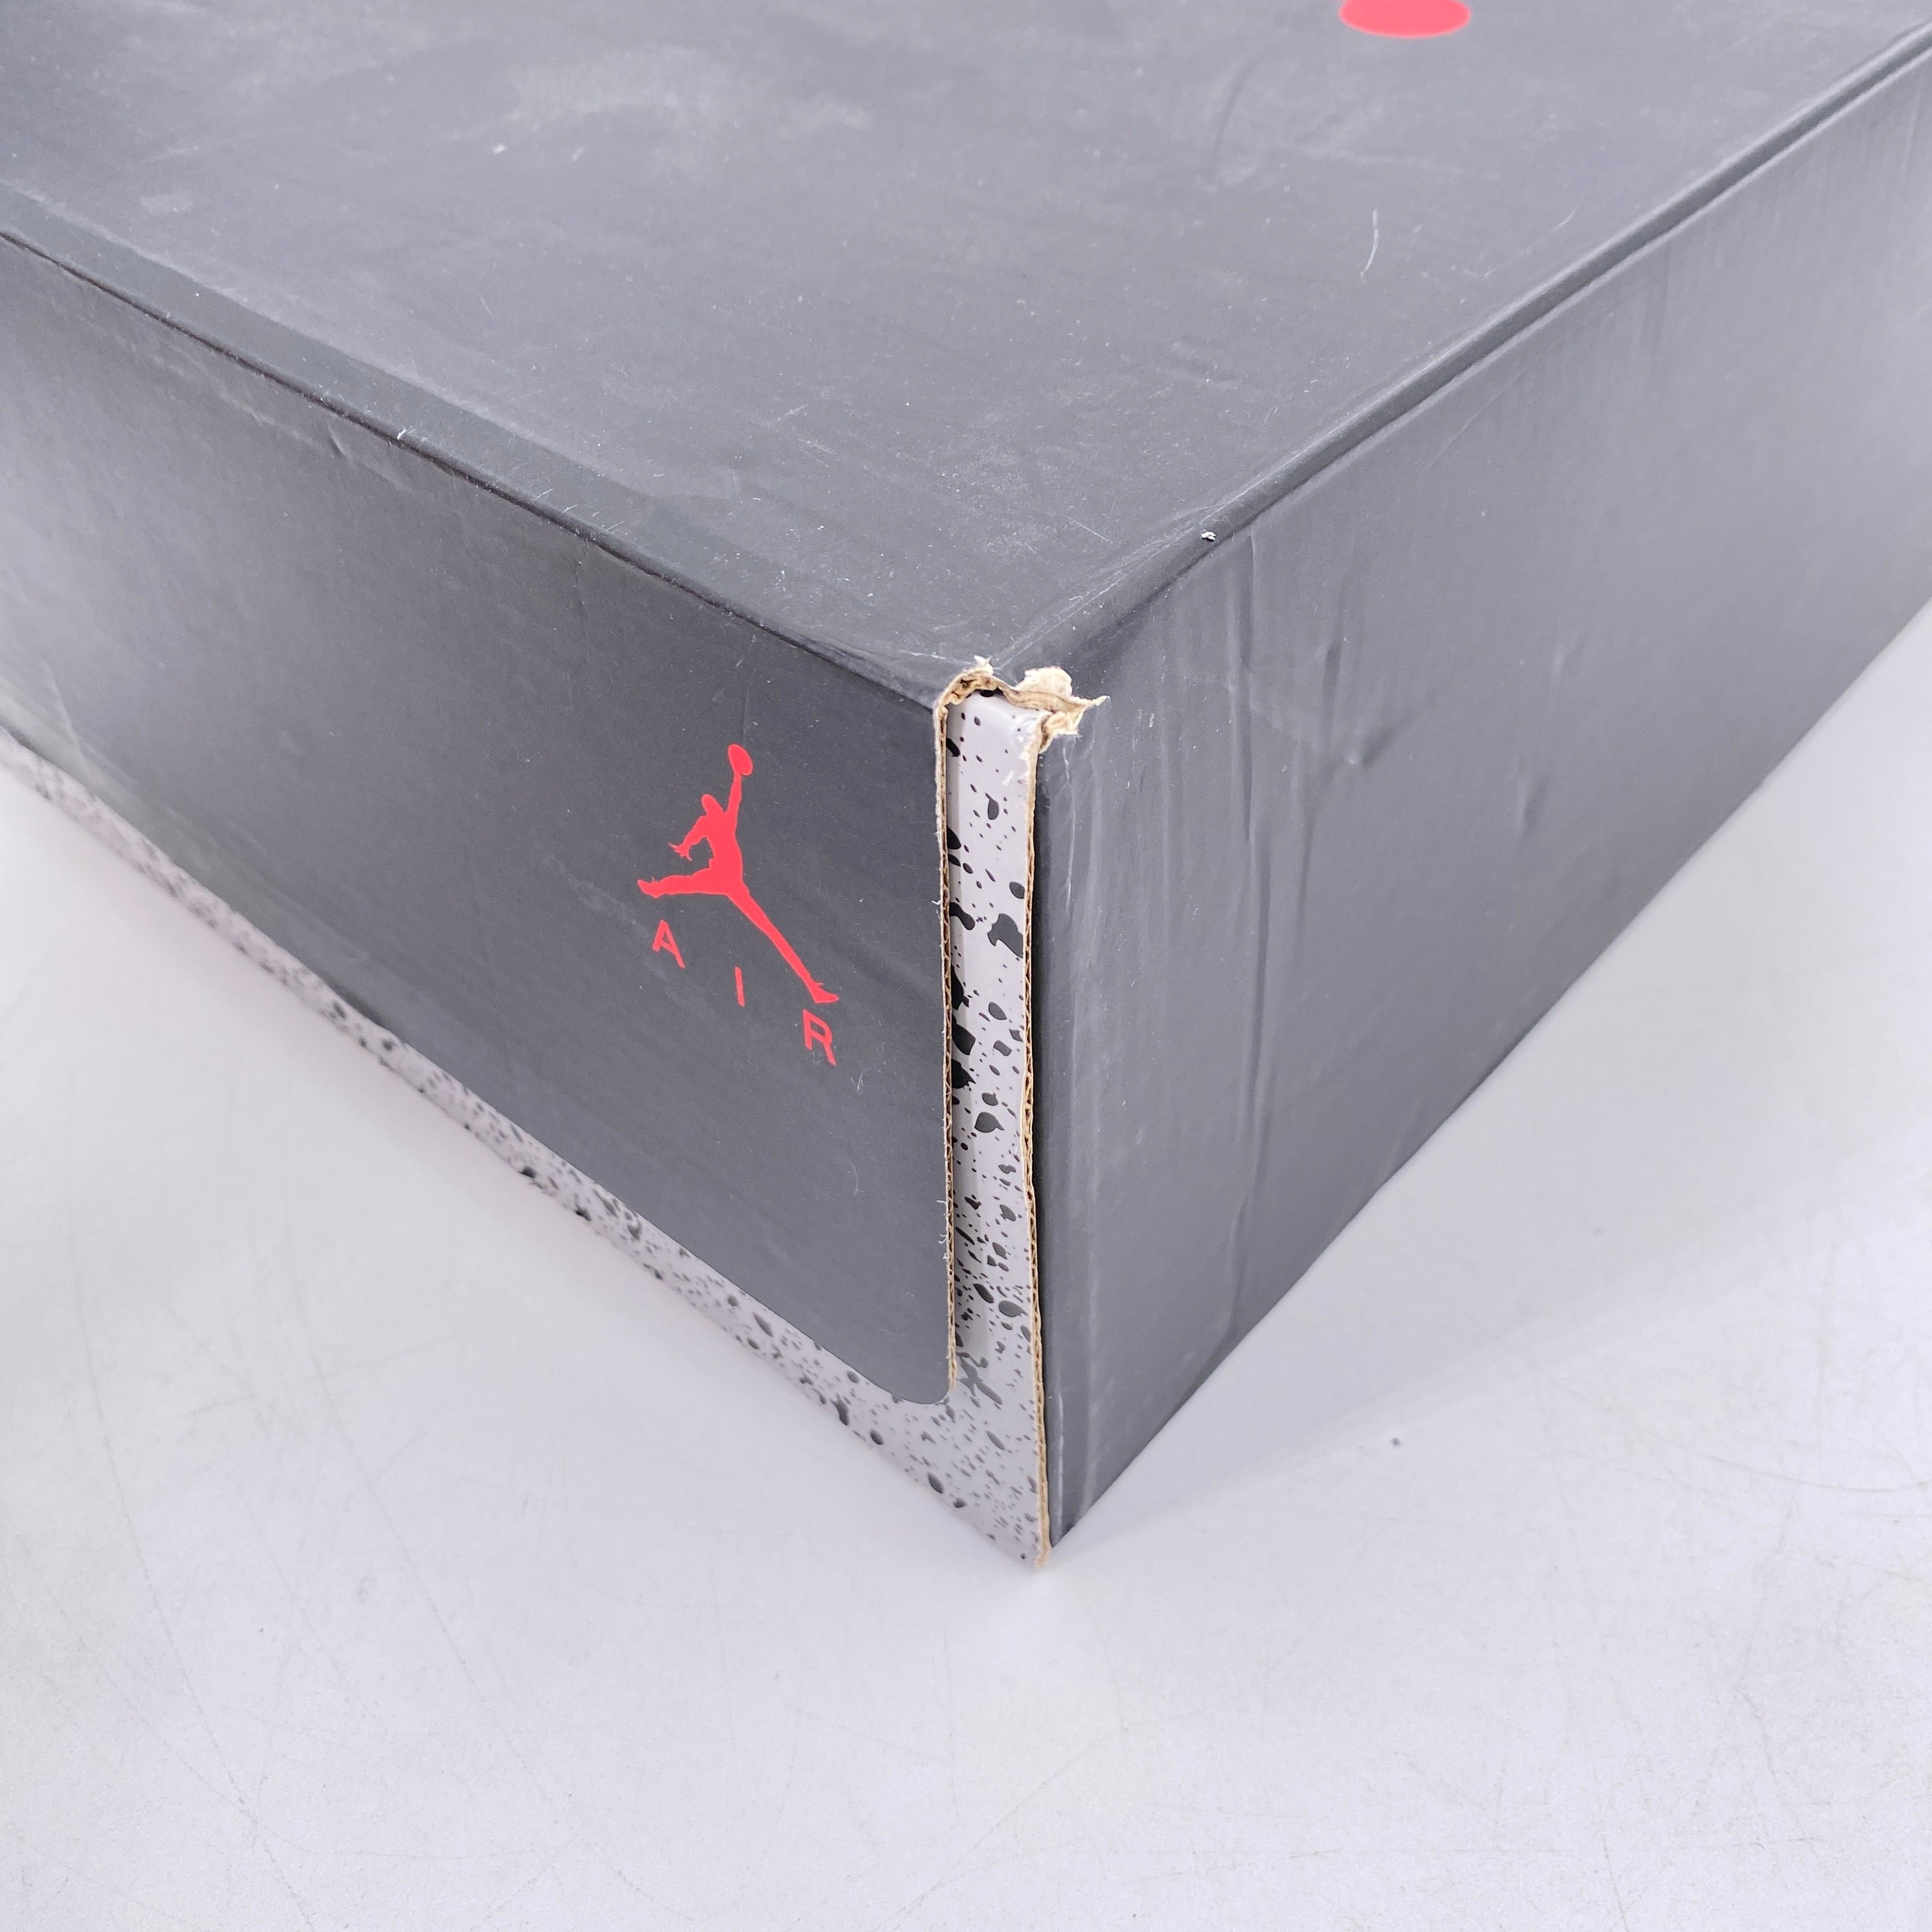 Air Jordan 6 Retro &quot;Washed Denim&quot; 2019 New Size 10.5